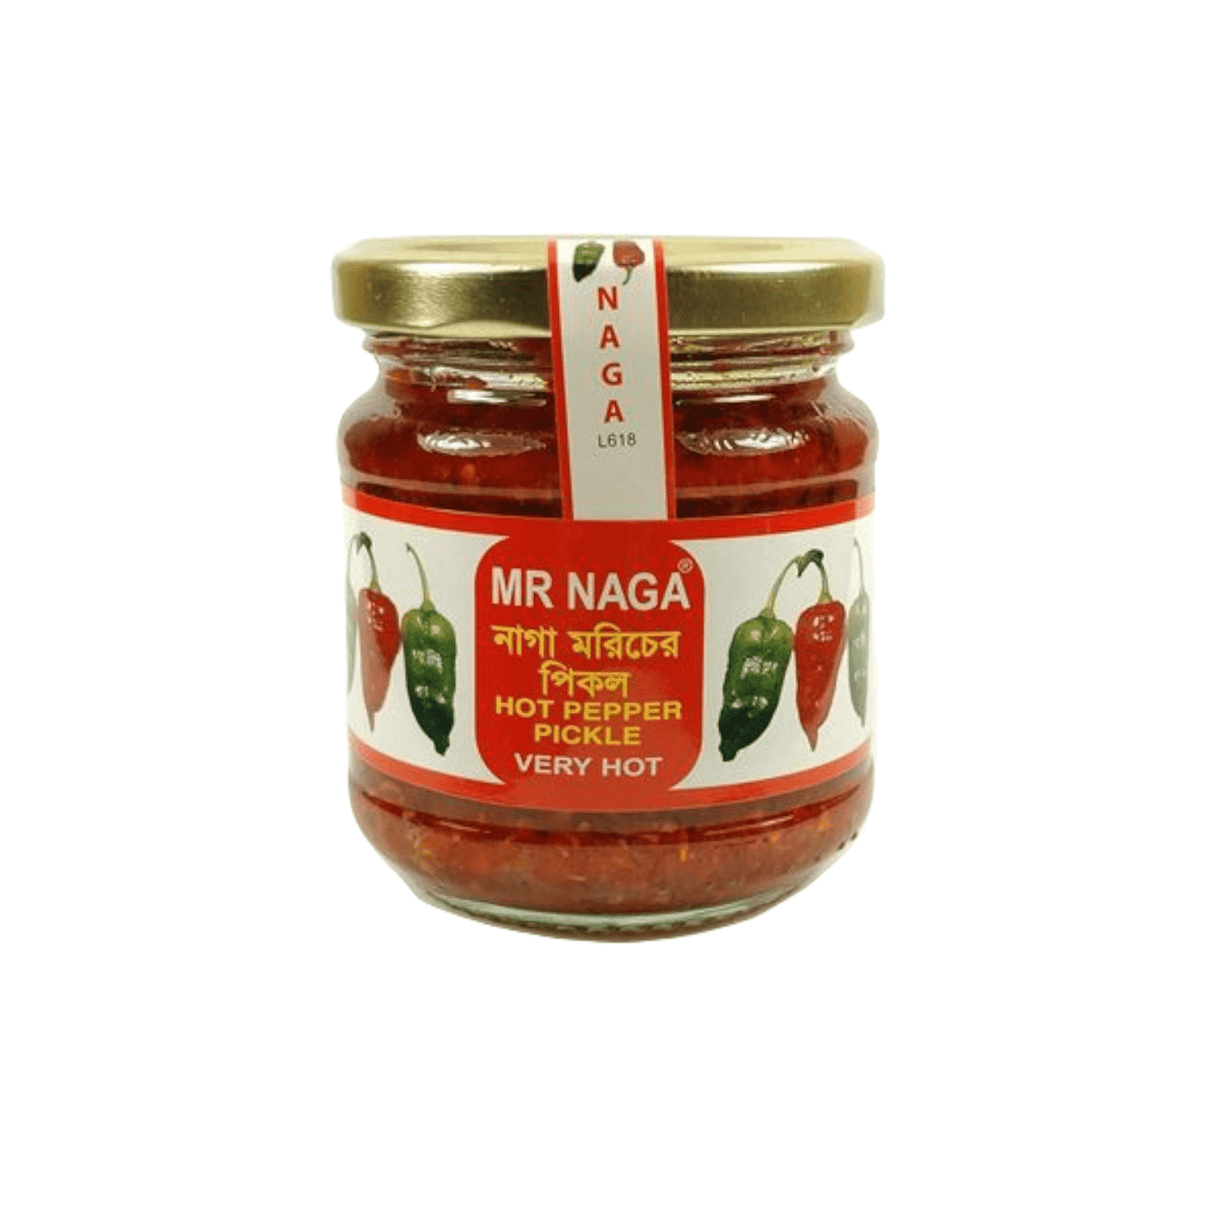 MR NAGA Hot Pepper Pickle Very Hot